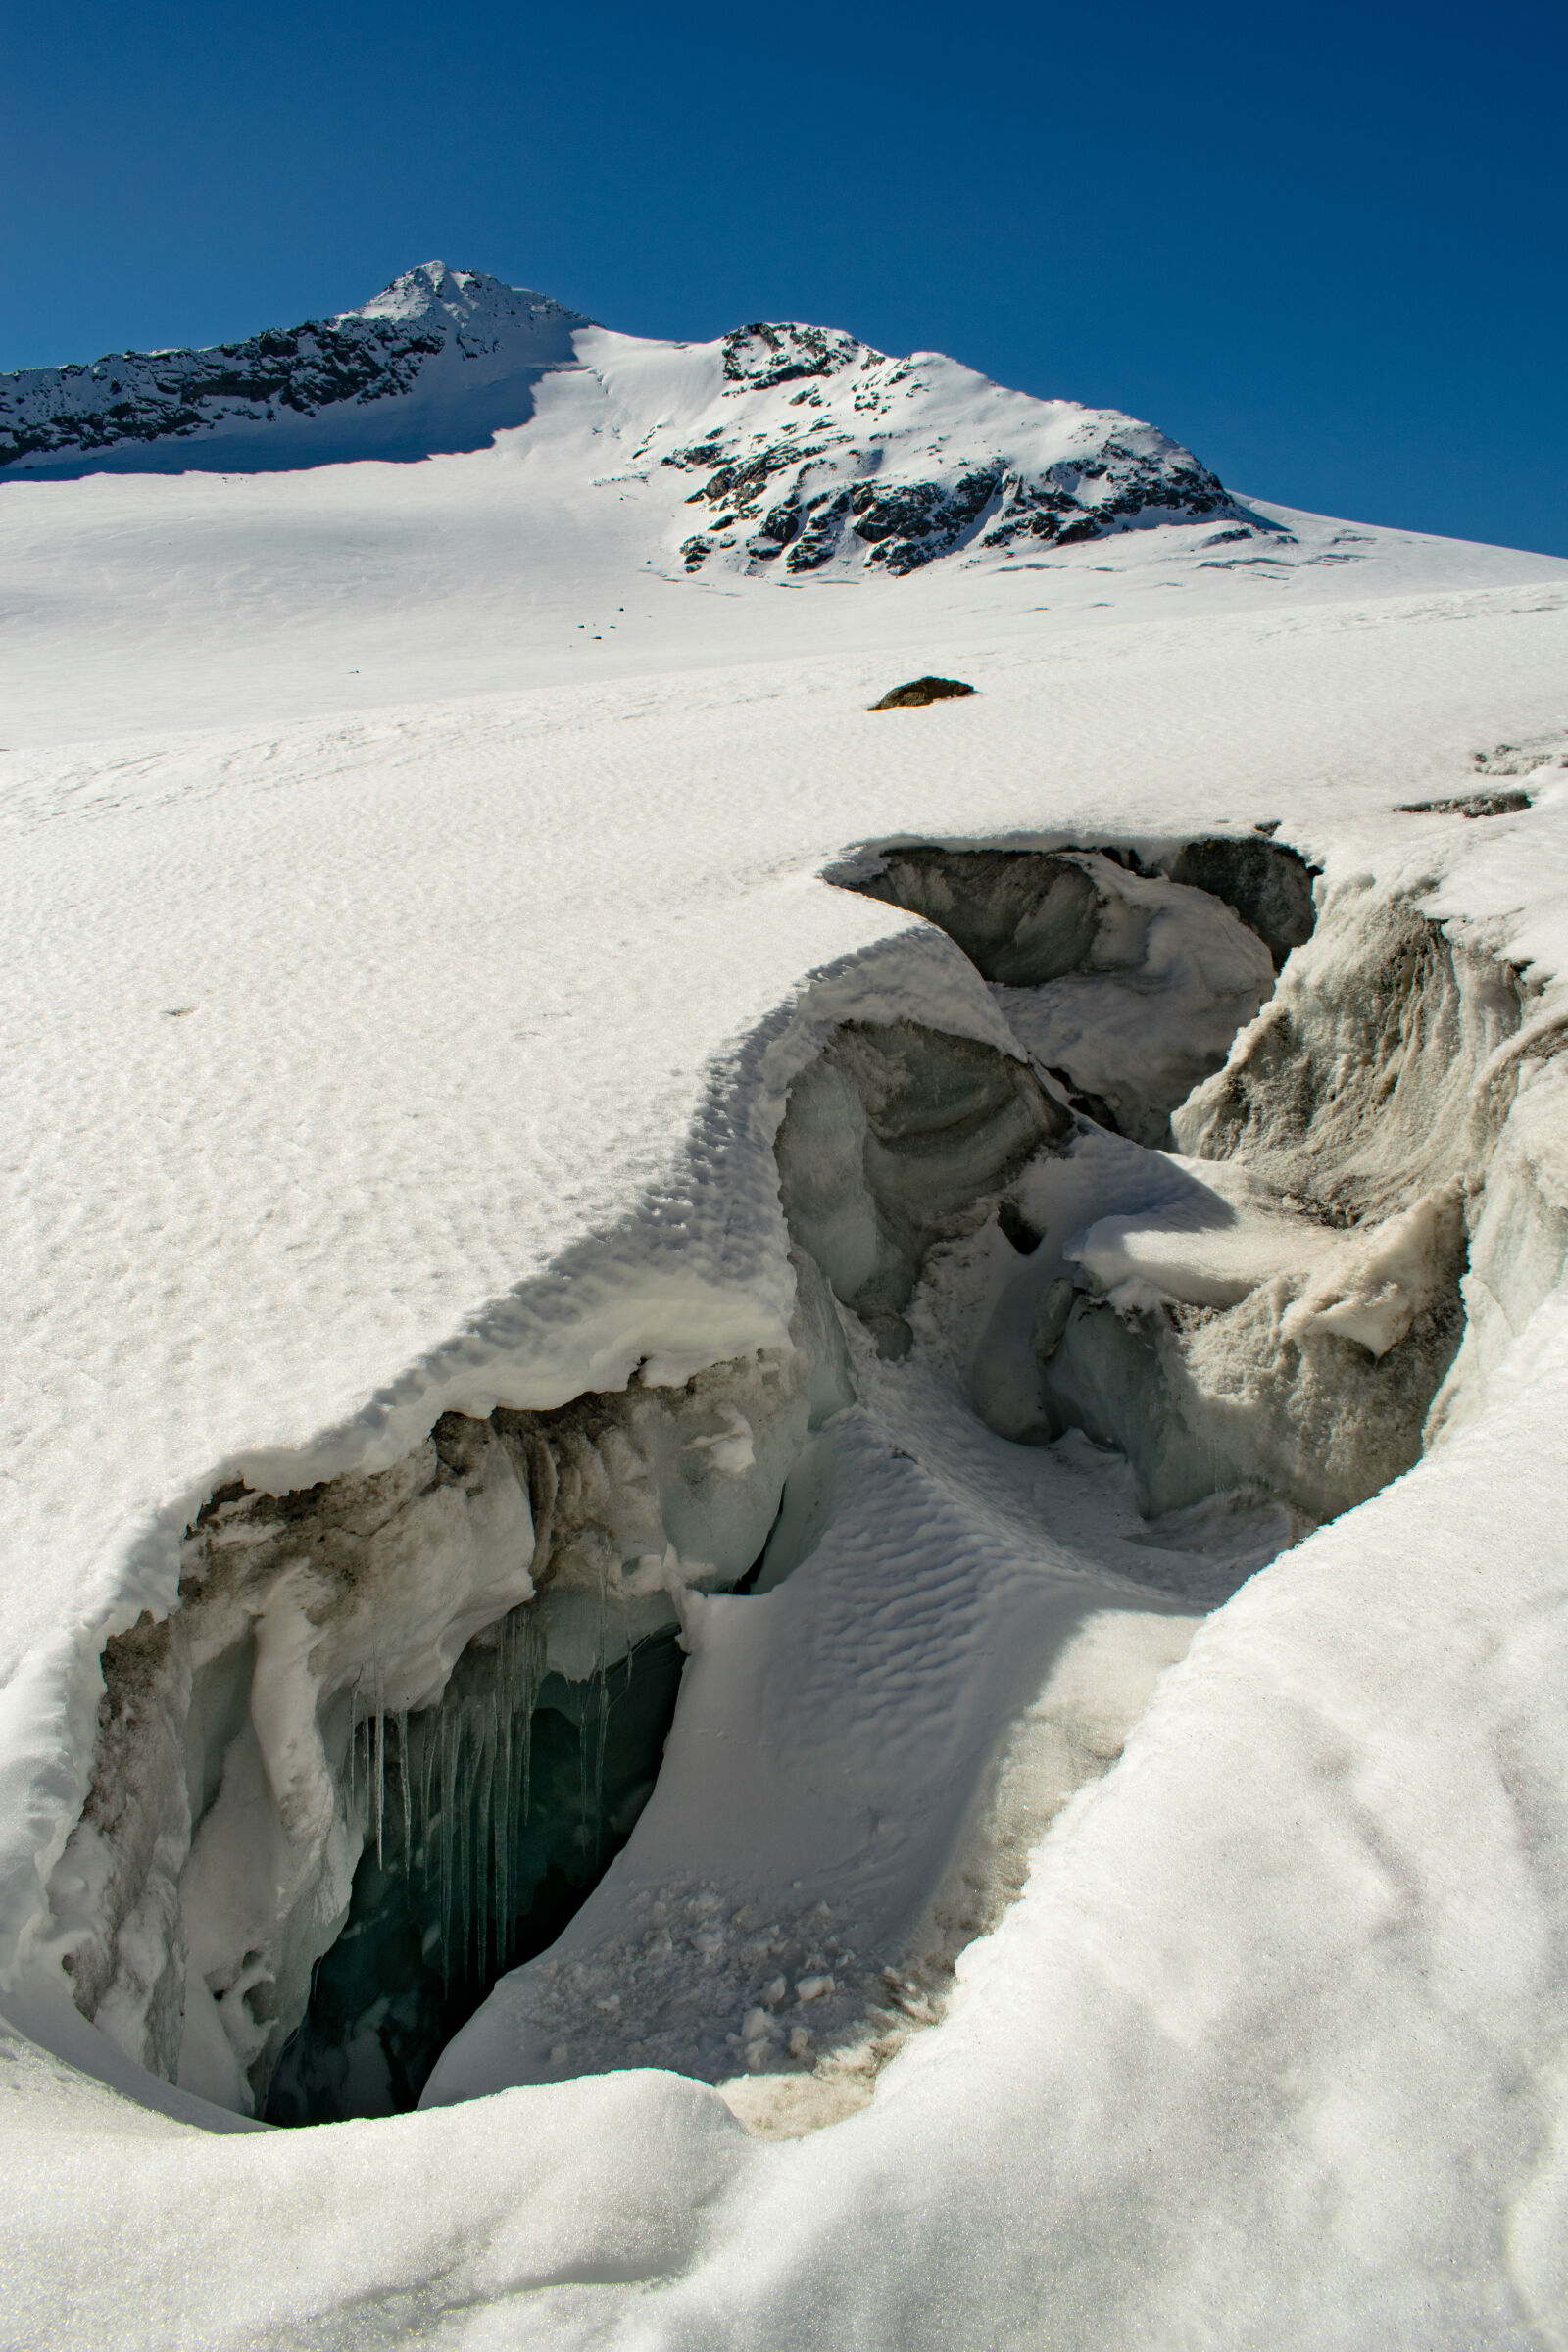 Nikon D3300 + Nikon AF-S DX Nikkor 18-55mm F3.5-5.6G II sample photo. Glacier, mountain, alps, october photography